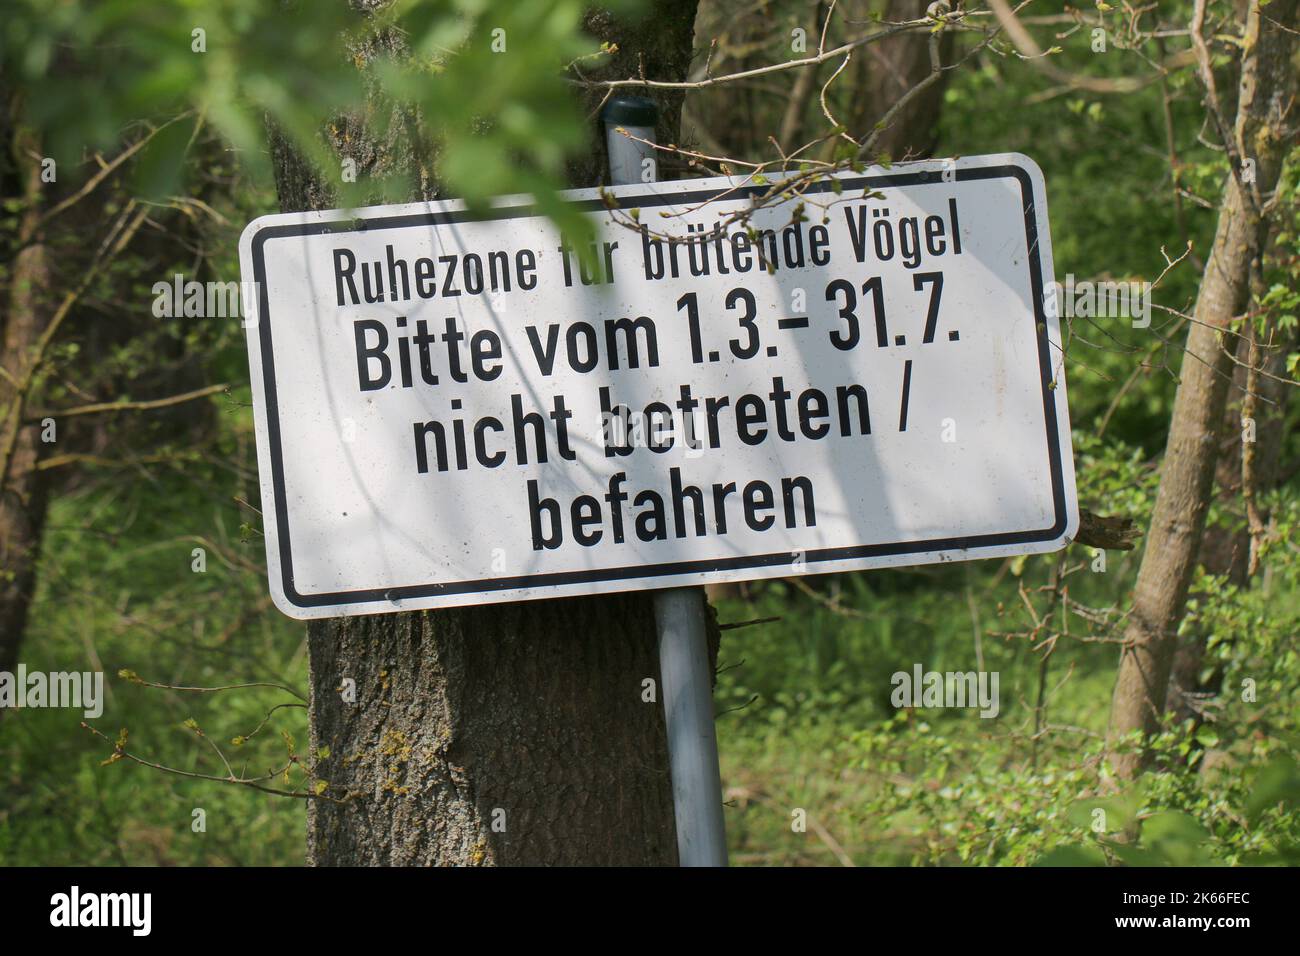 Aucun signe d'intrusion pendant la saison de reproduction désignée des espèces d'oiseaux sauvages, Allemagne Banque D'Images